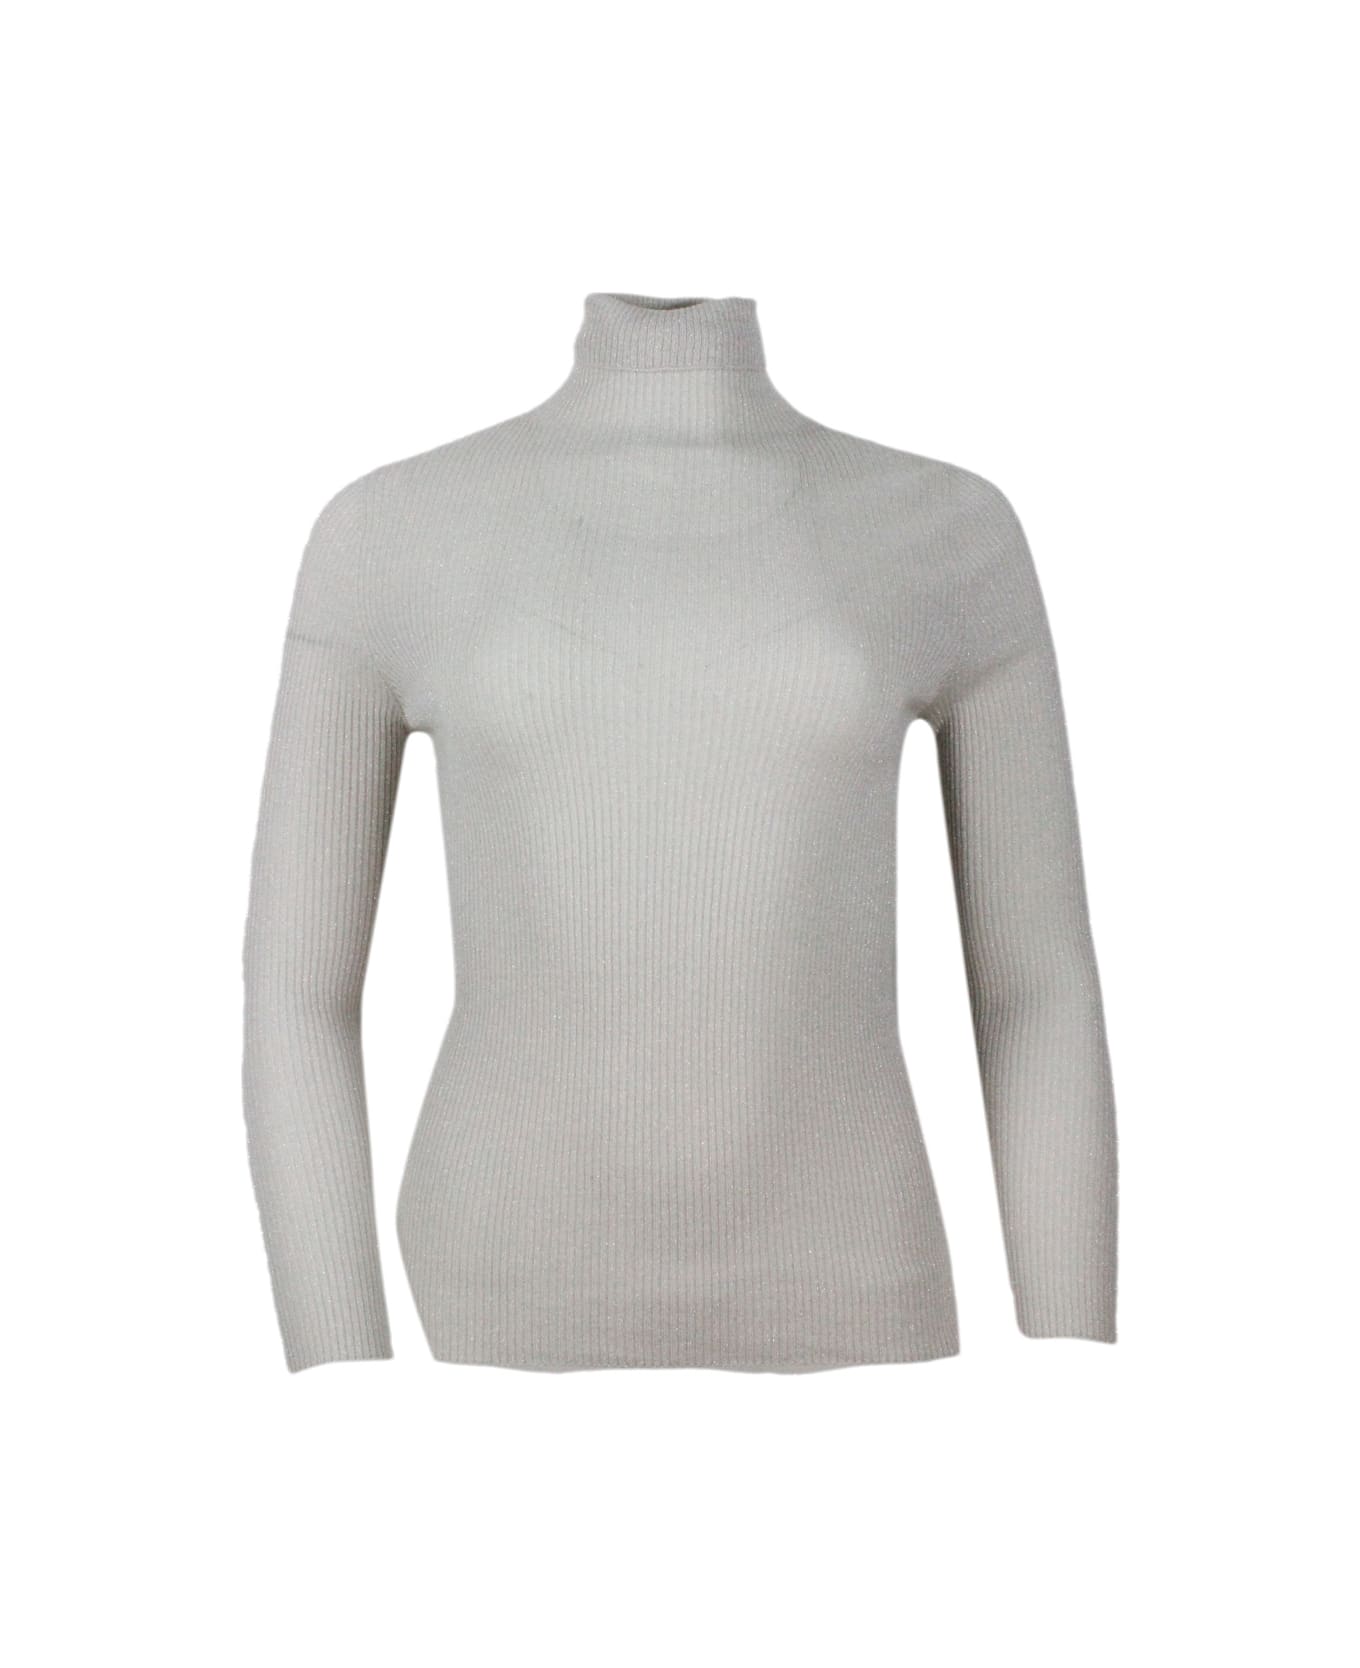 Fabiana Filippi Long-sleeved Turtleneck Sweater In Merino Lamè Embellished With Shiny Lurex That Gives Brightness - Beige